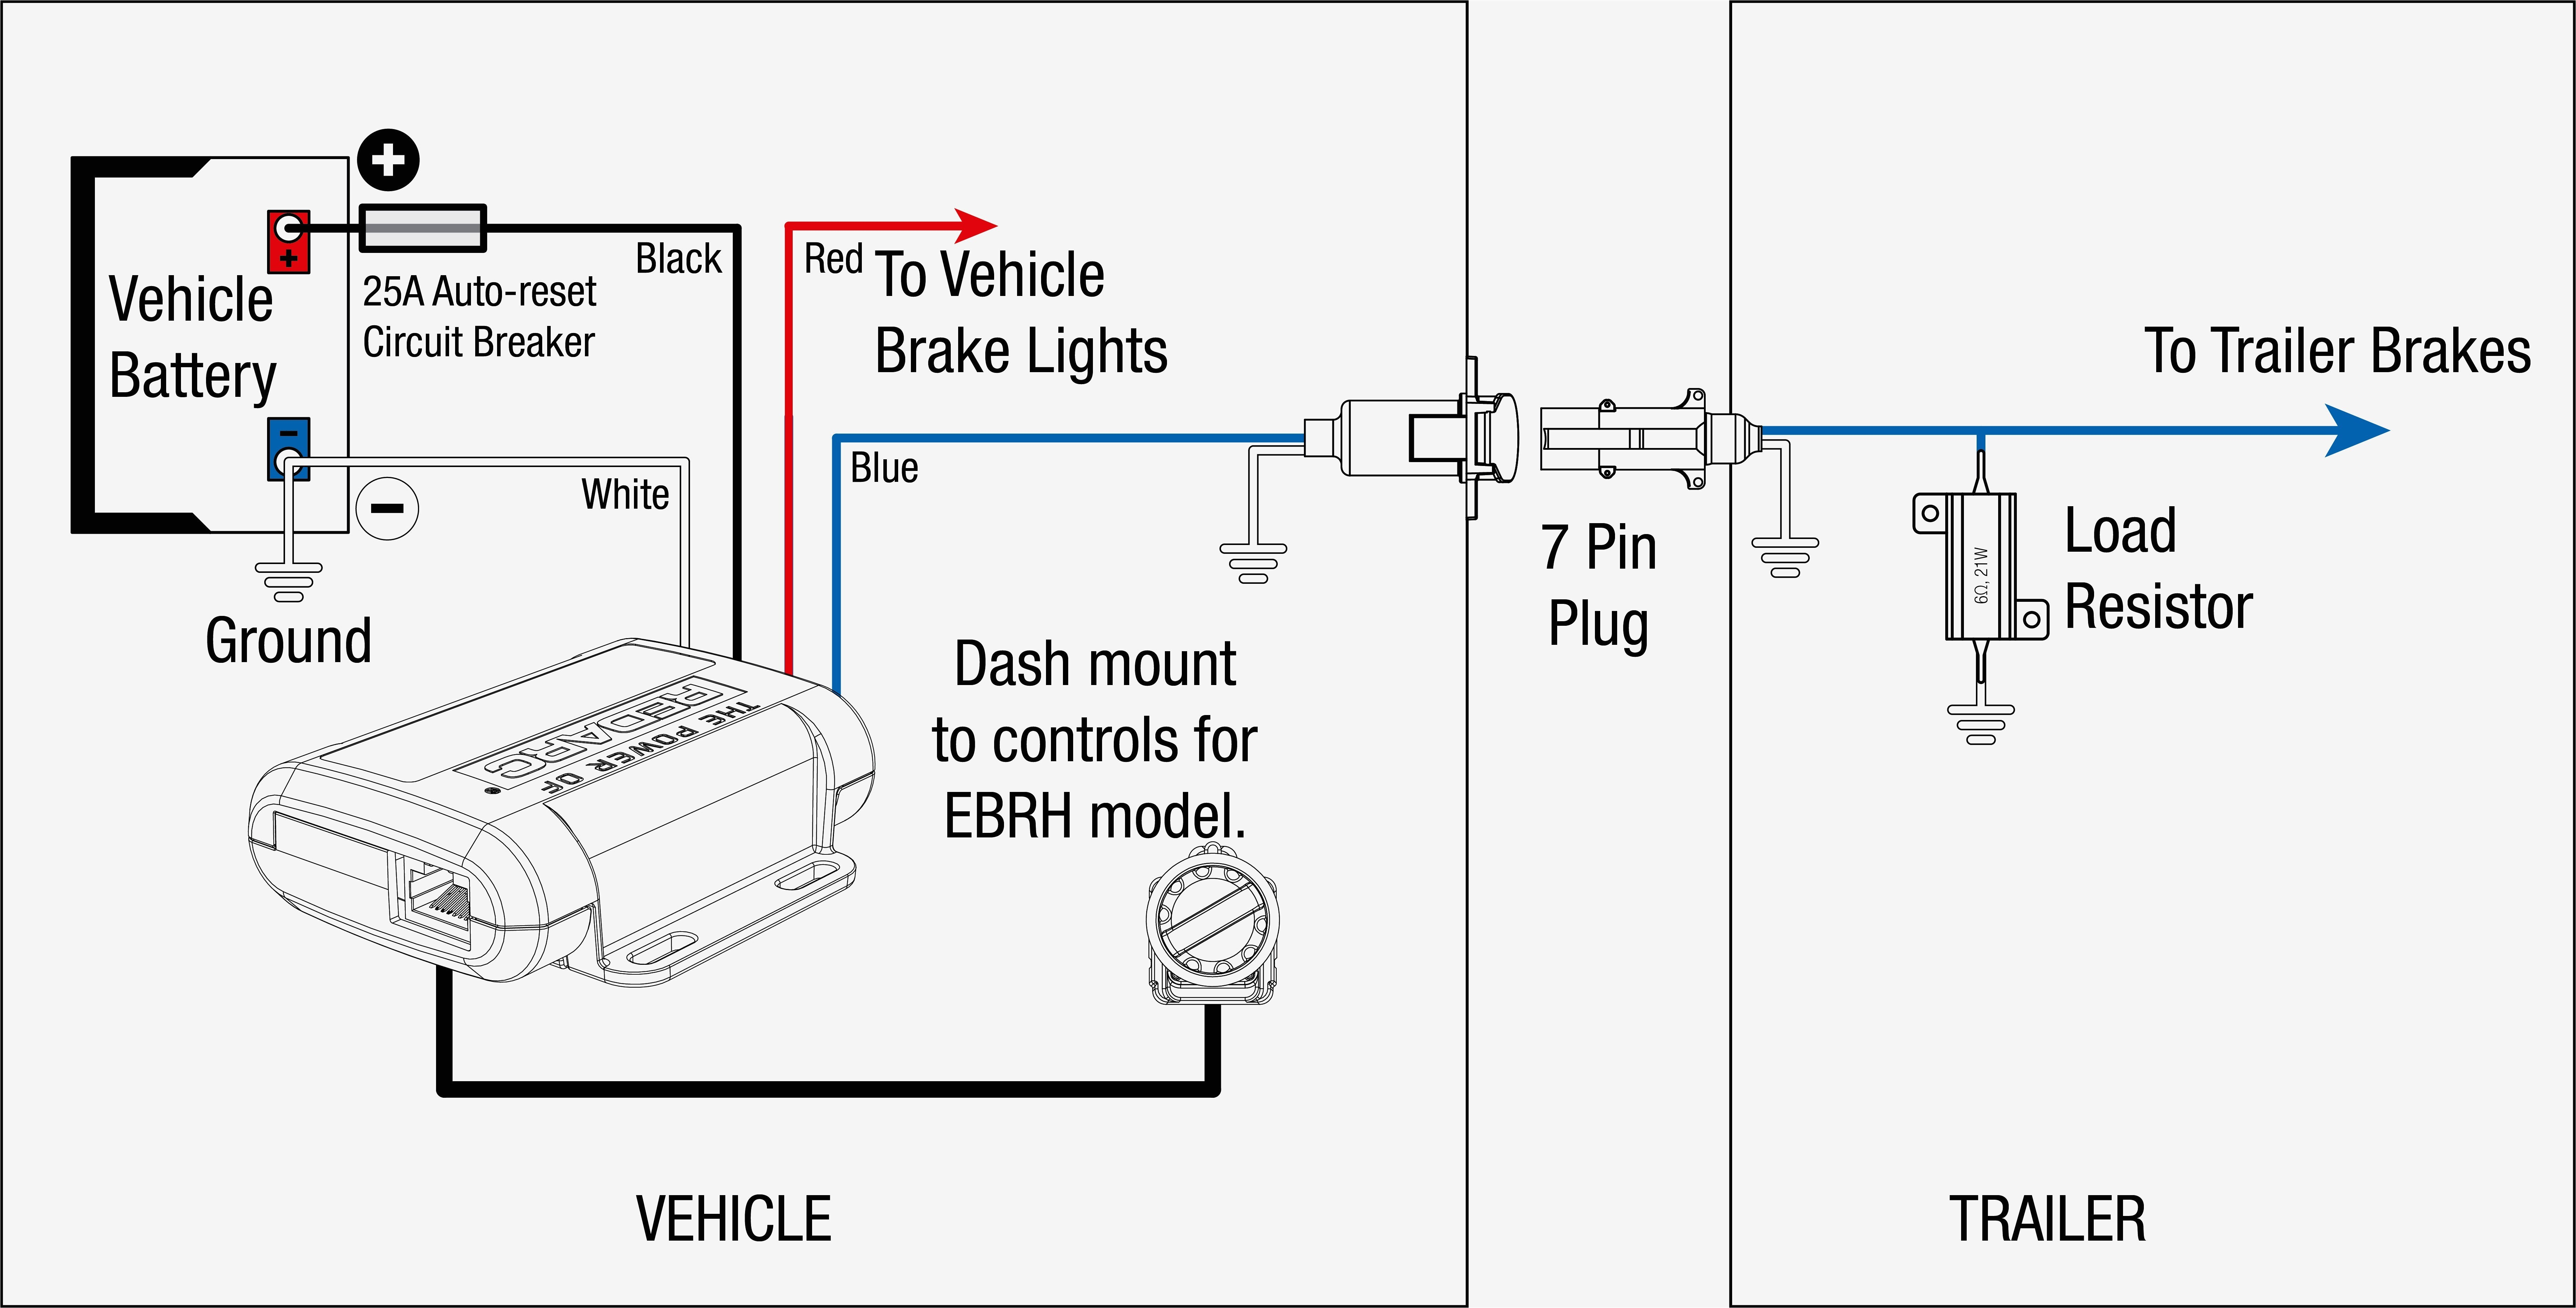 tekonsha voyager wiring diagram wiring diagram sheet tekonsha voyager wiring diagram tekonsha voyager wiring diagram